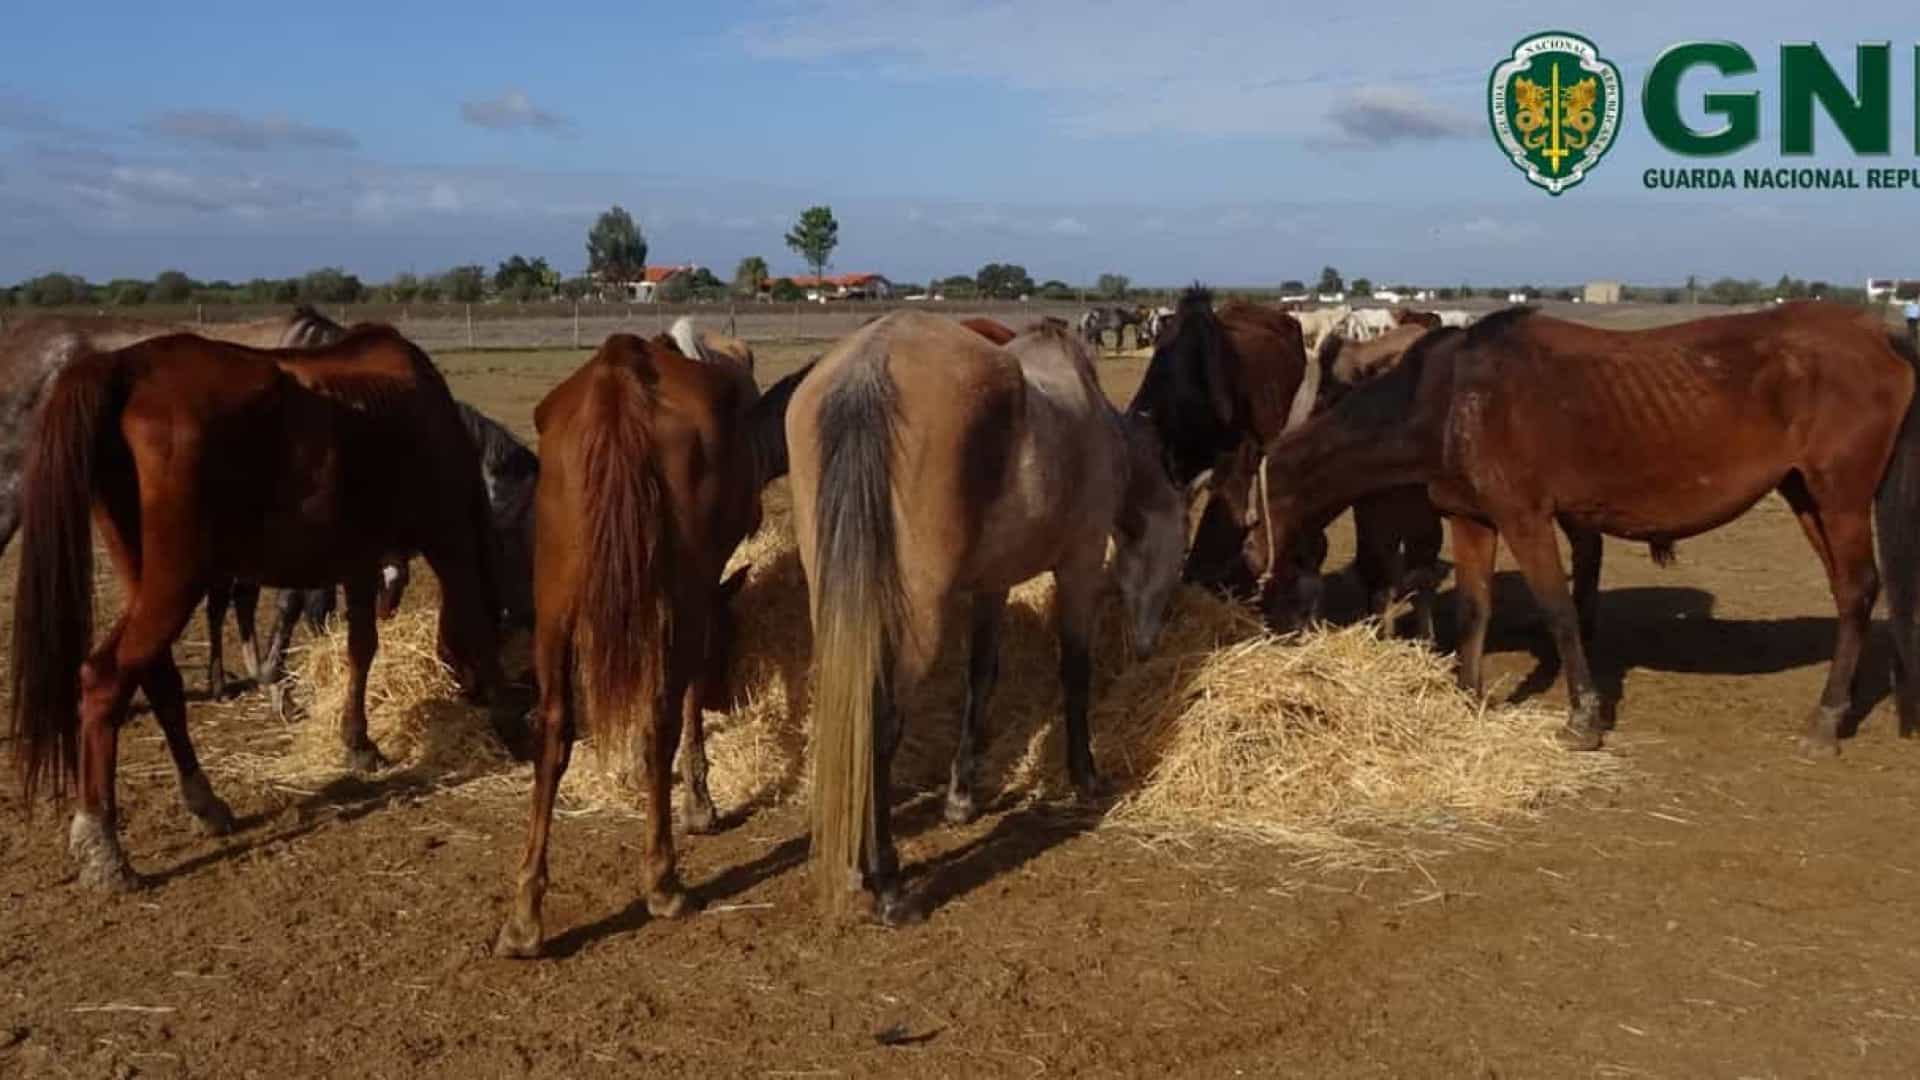 Cavalos encontrados em condições de subnutrição acabam por morrer no Alentejo